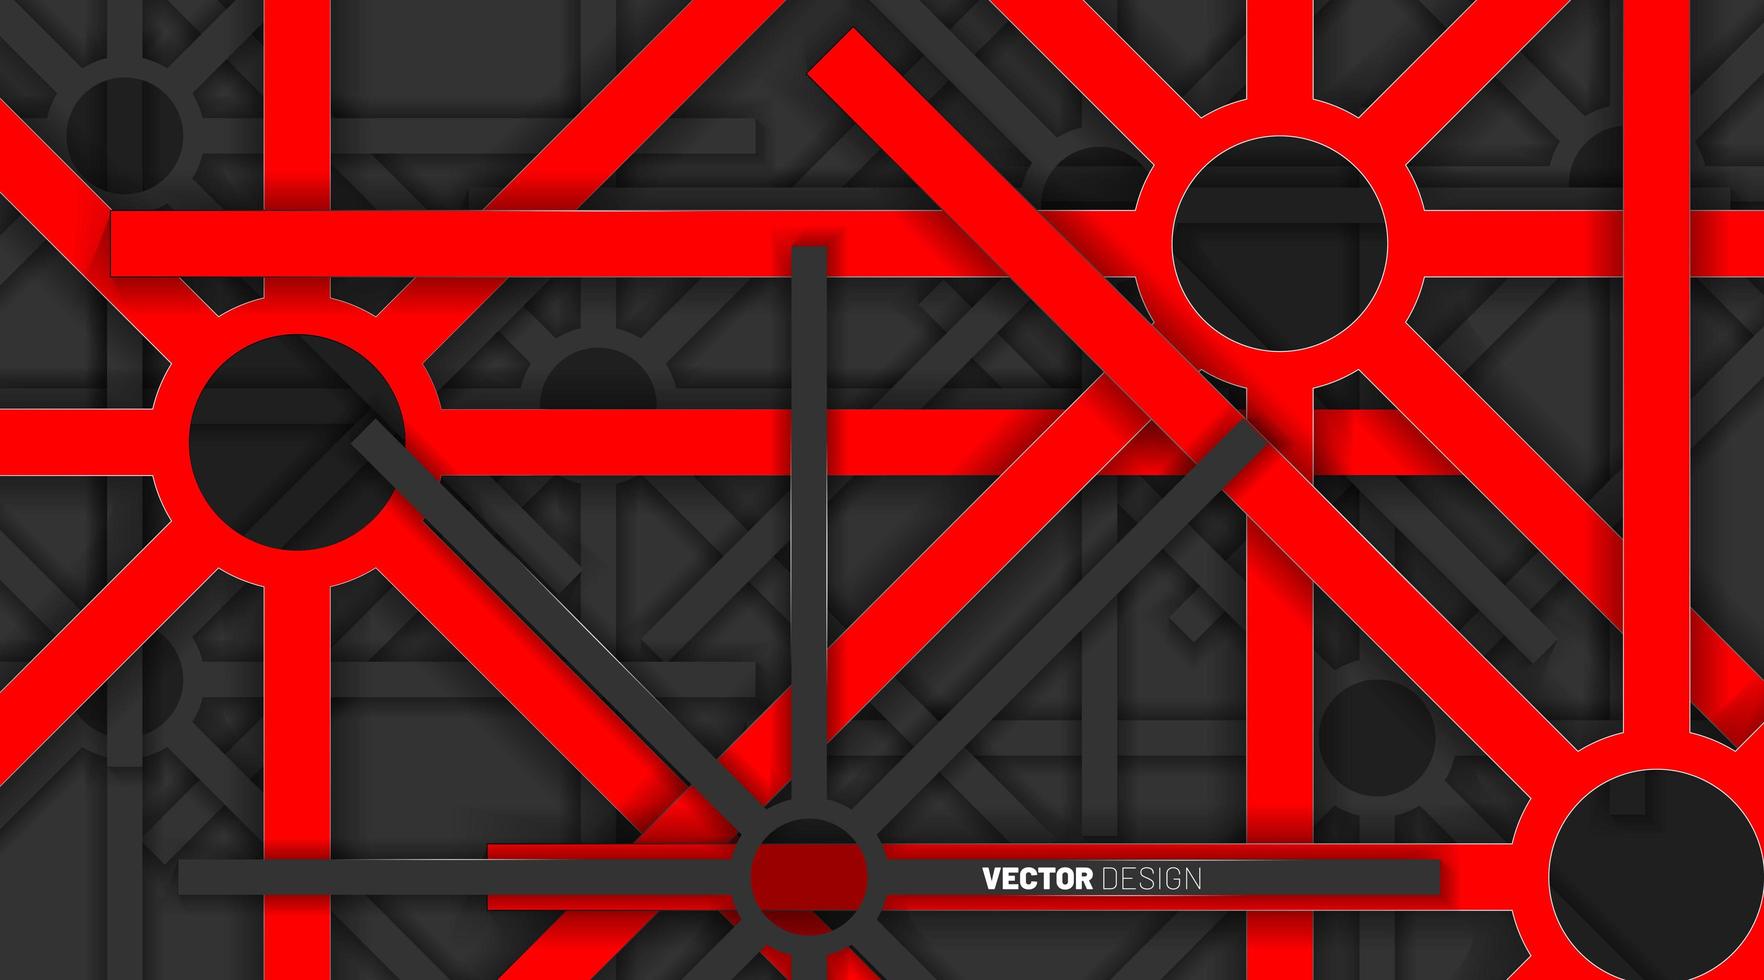 rode geometrische vormen overlappen met grijze kleuren op een donkere achtergrond. vector